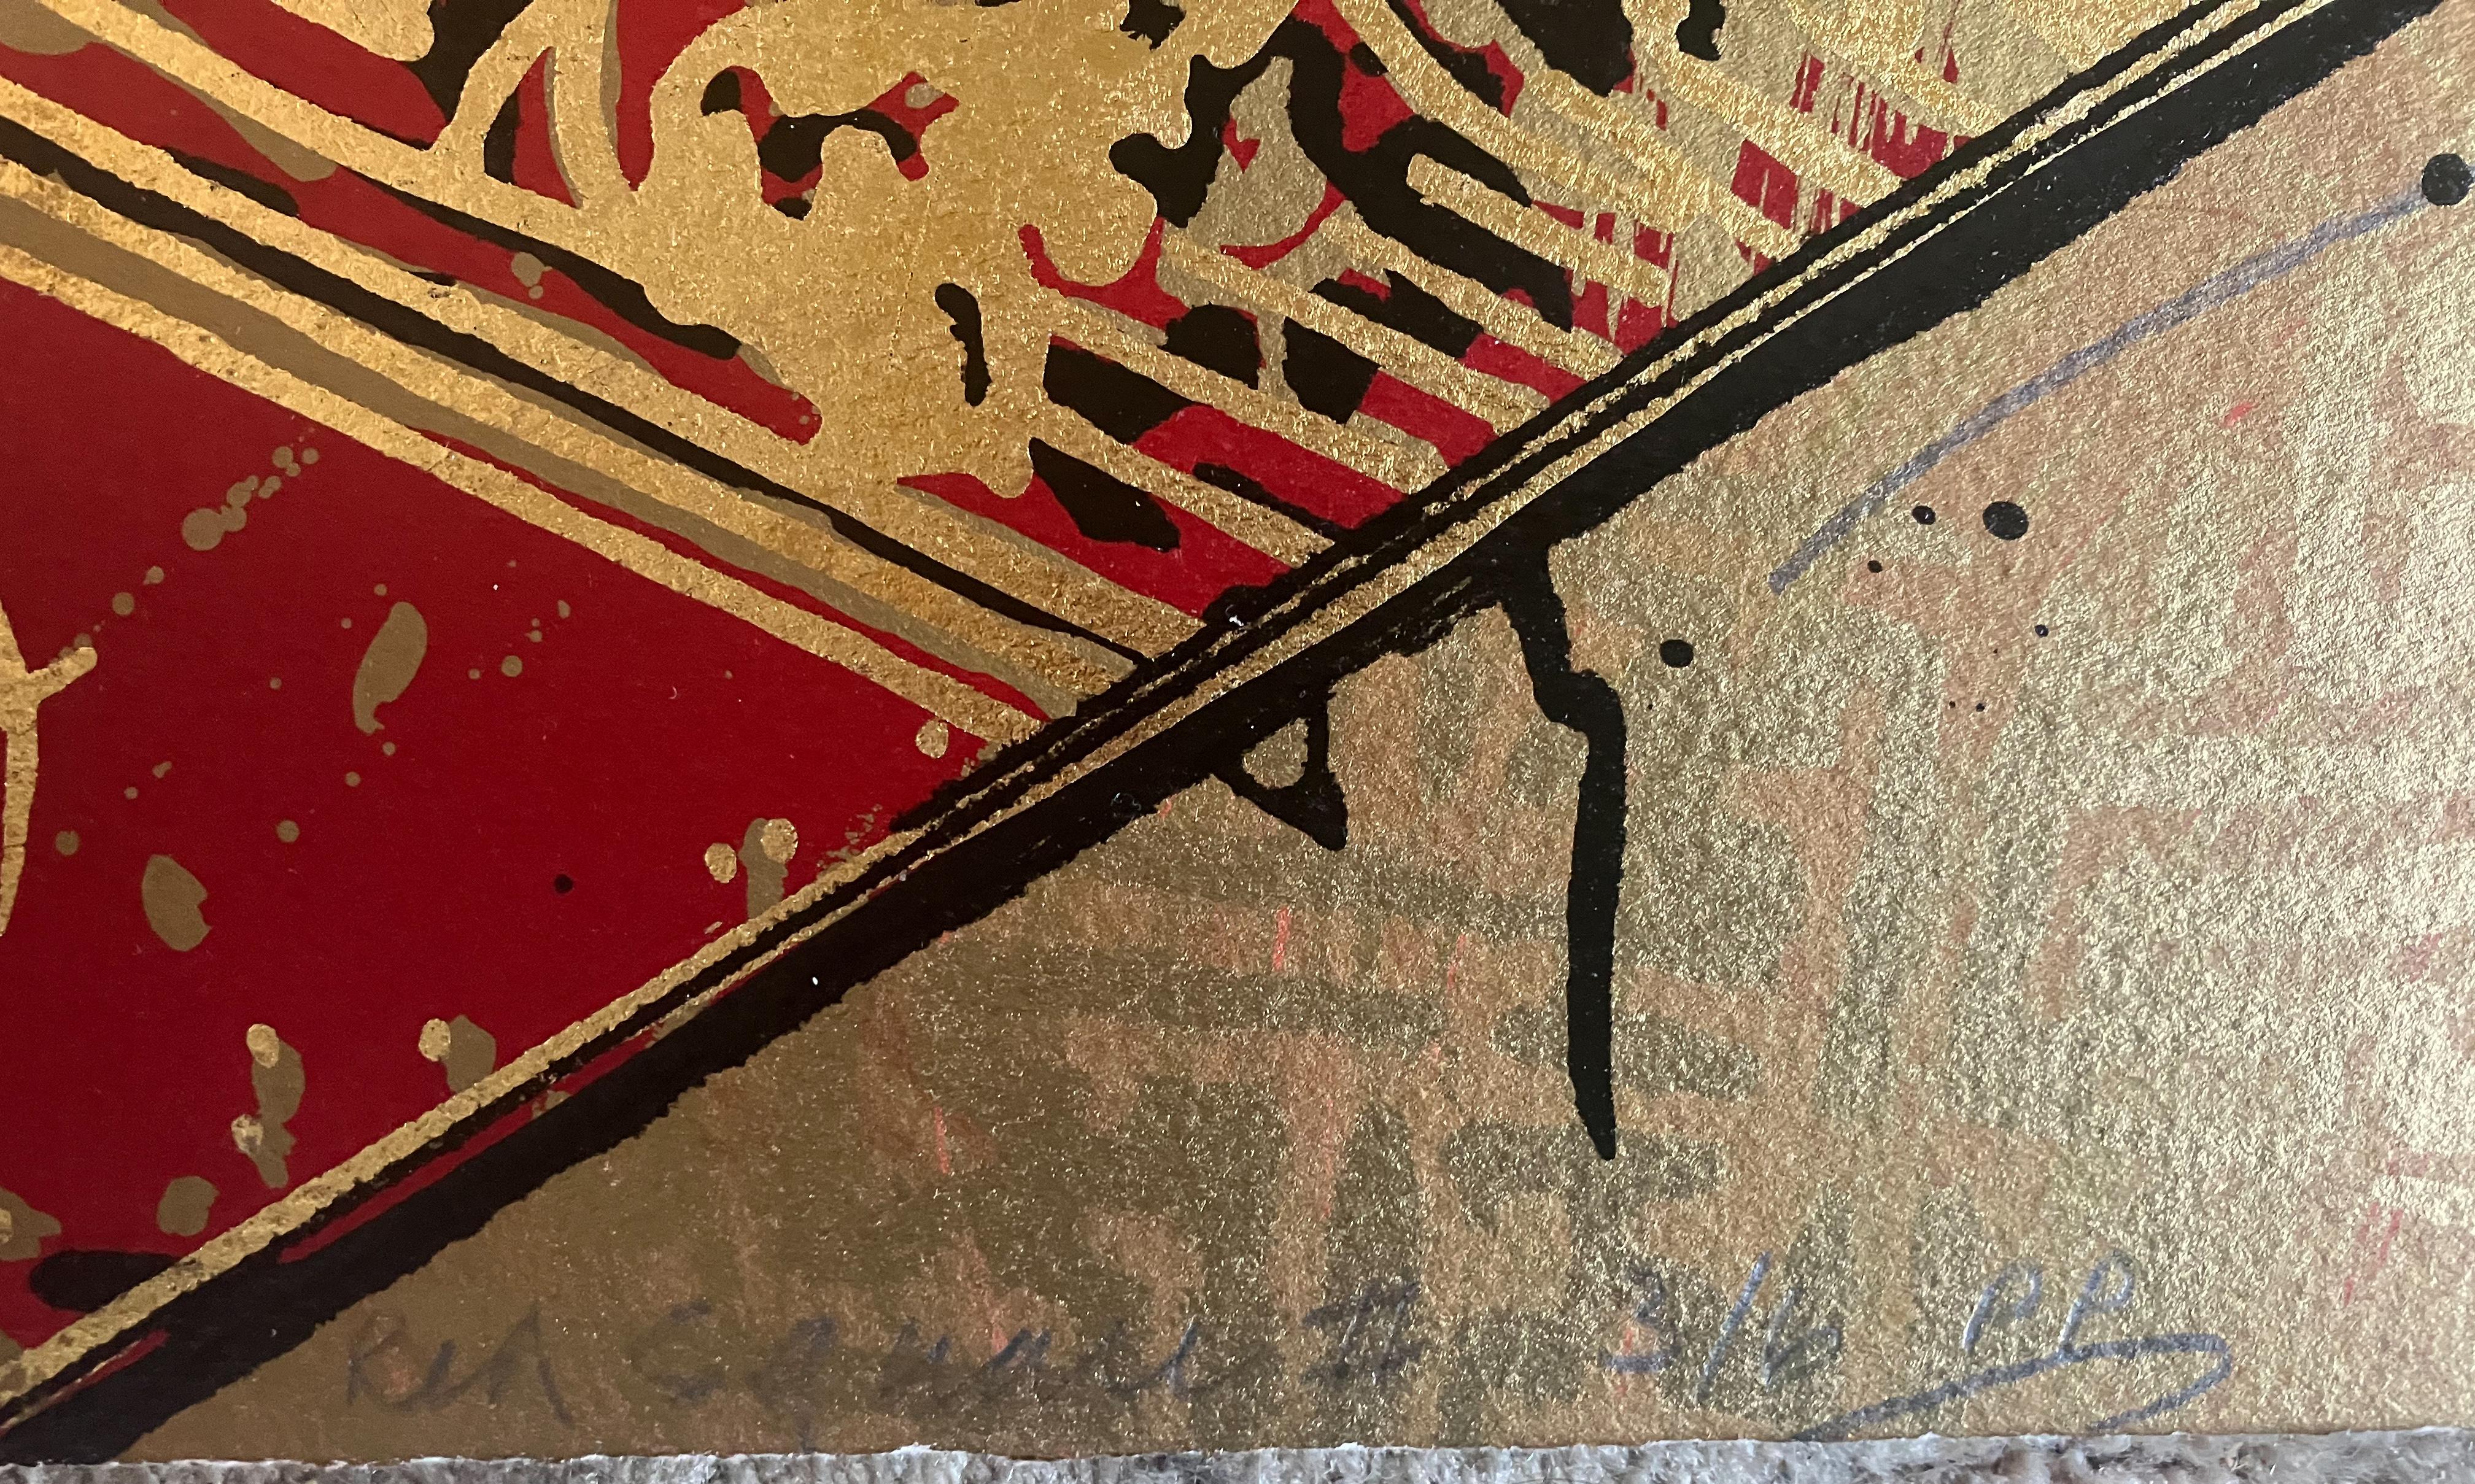 Künstler: William Gatewood (1943- 1994)
Titel: Roter Platz I, II
Datum: 1992
Medium: Diptychon Siebdruck 
Größe: Jedes Blatt 36 x 36 Zoll. 36 x 72 Zoll insgesamt
Signatur: Jedes Blatt signiert, datiert unten rechts mit Bleistift
Auflage: 125 plus